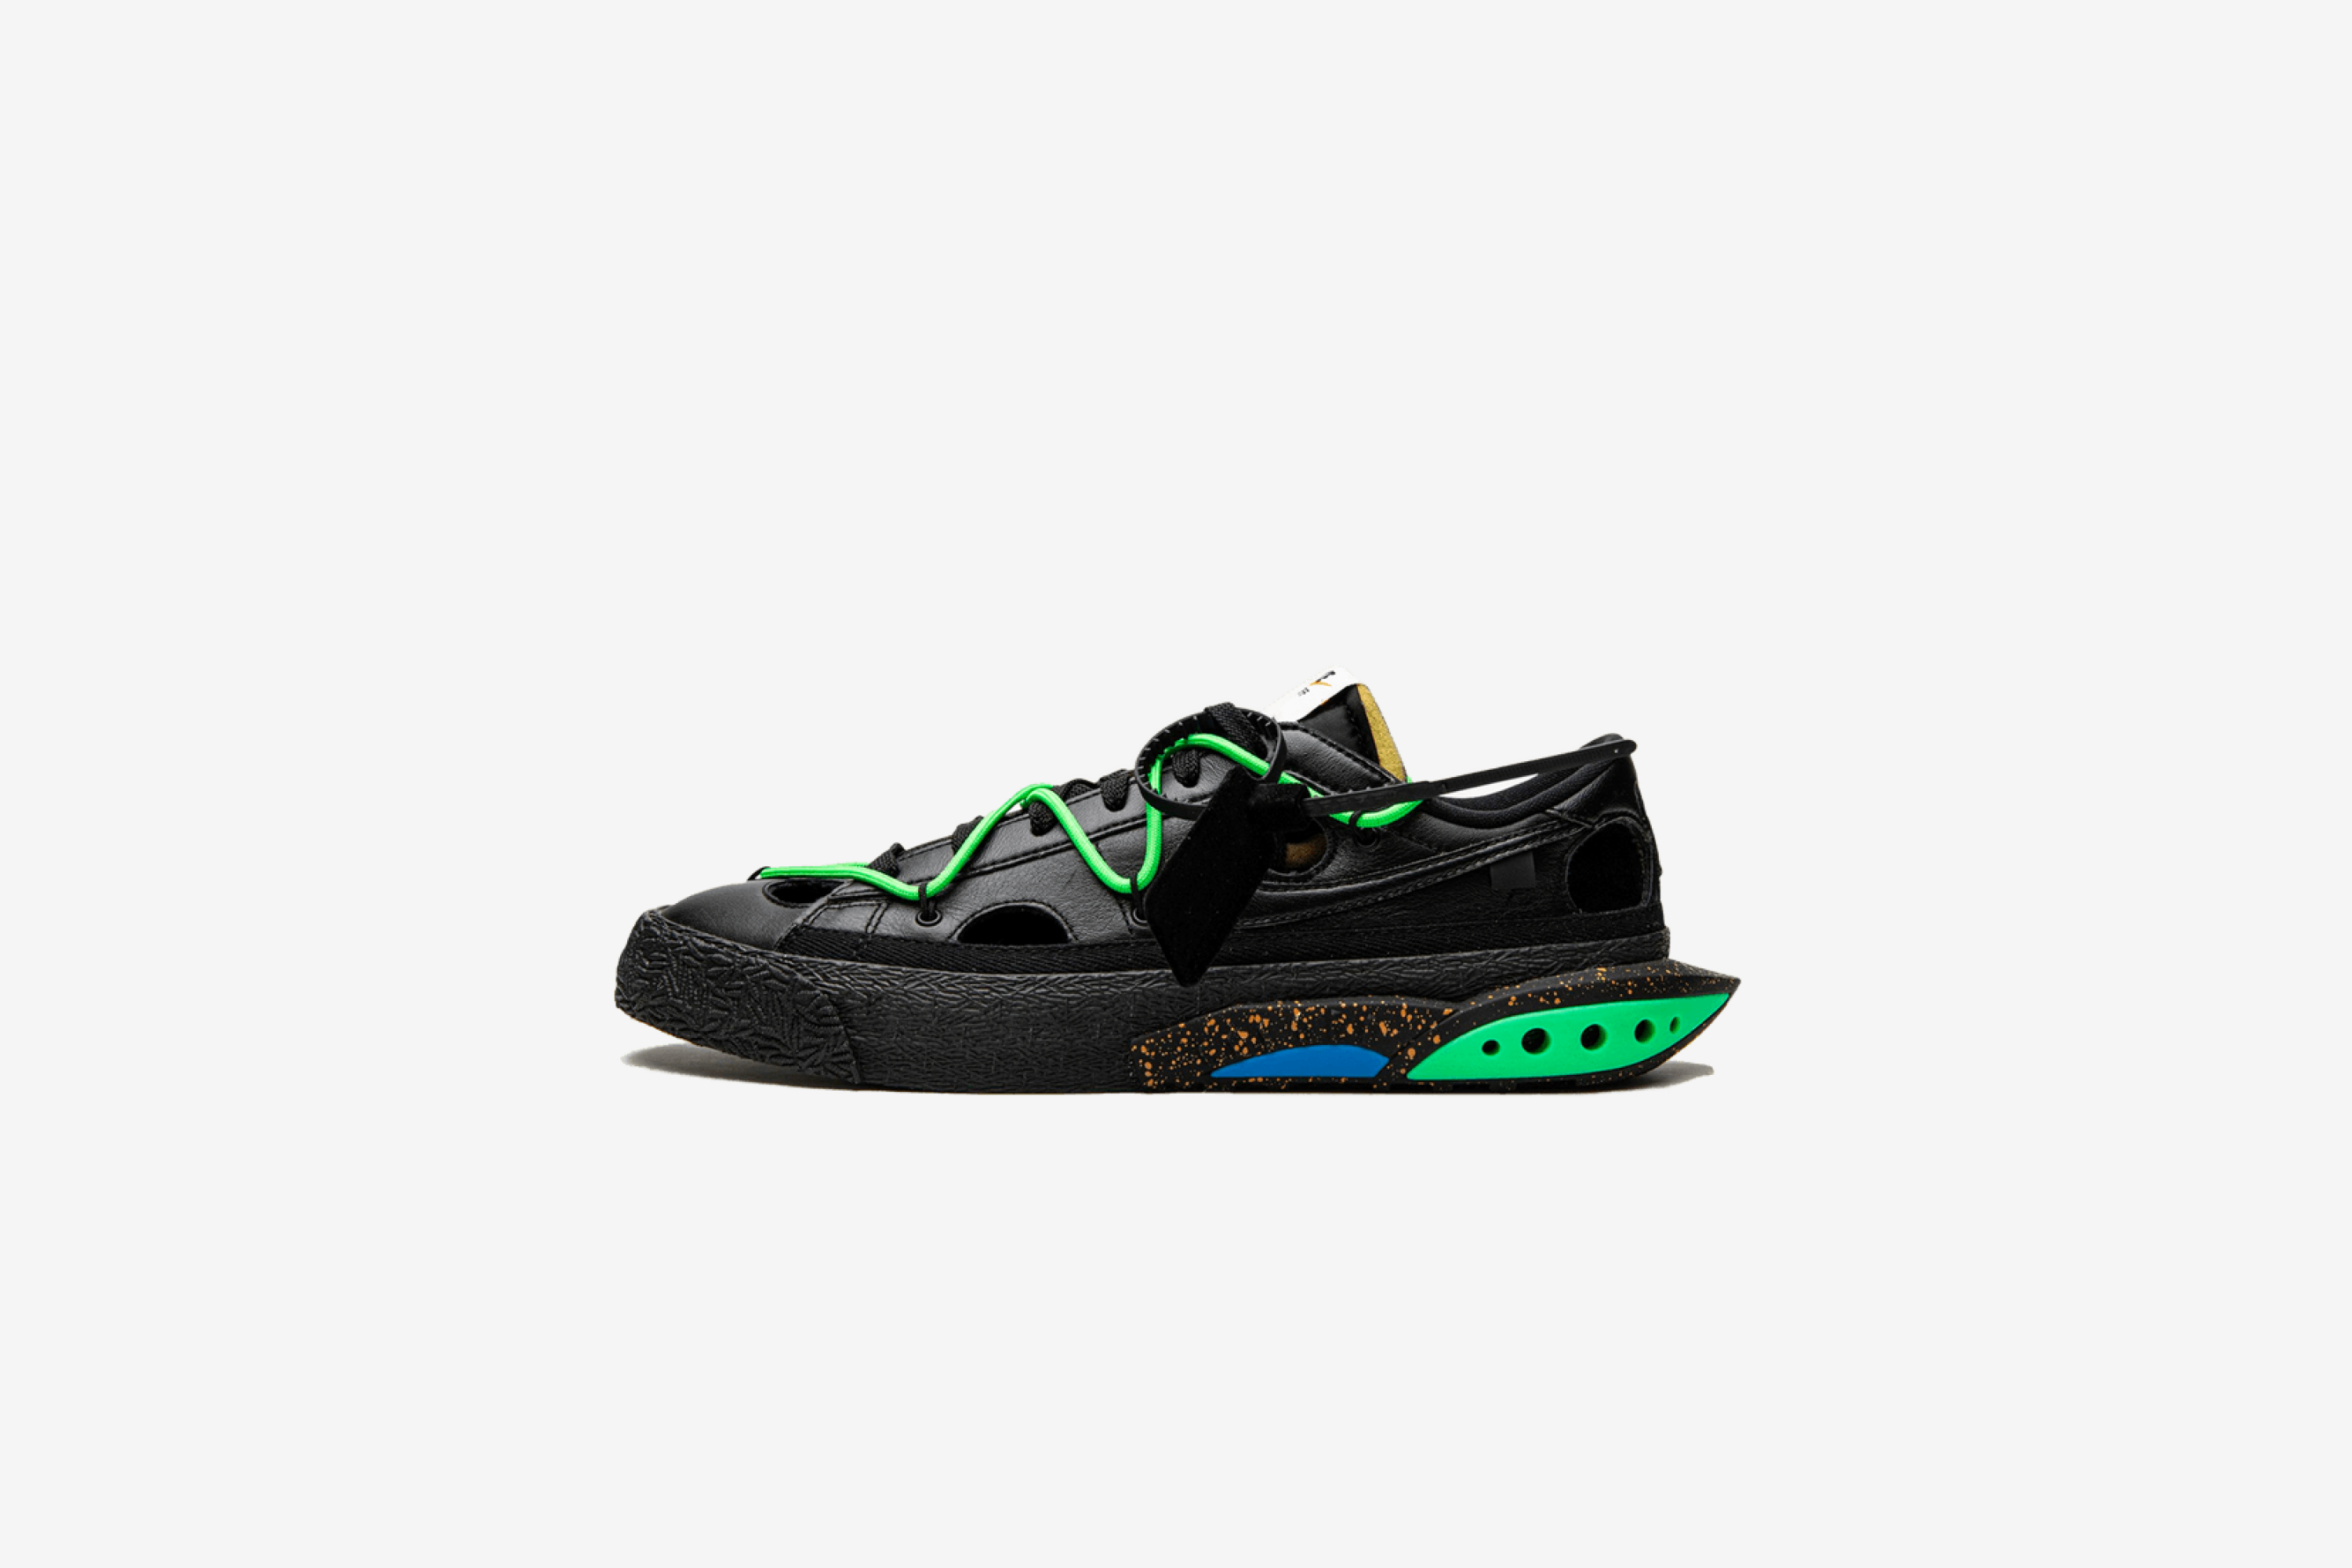 Nike Blazer Low Off-White 'Black Electro Green'